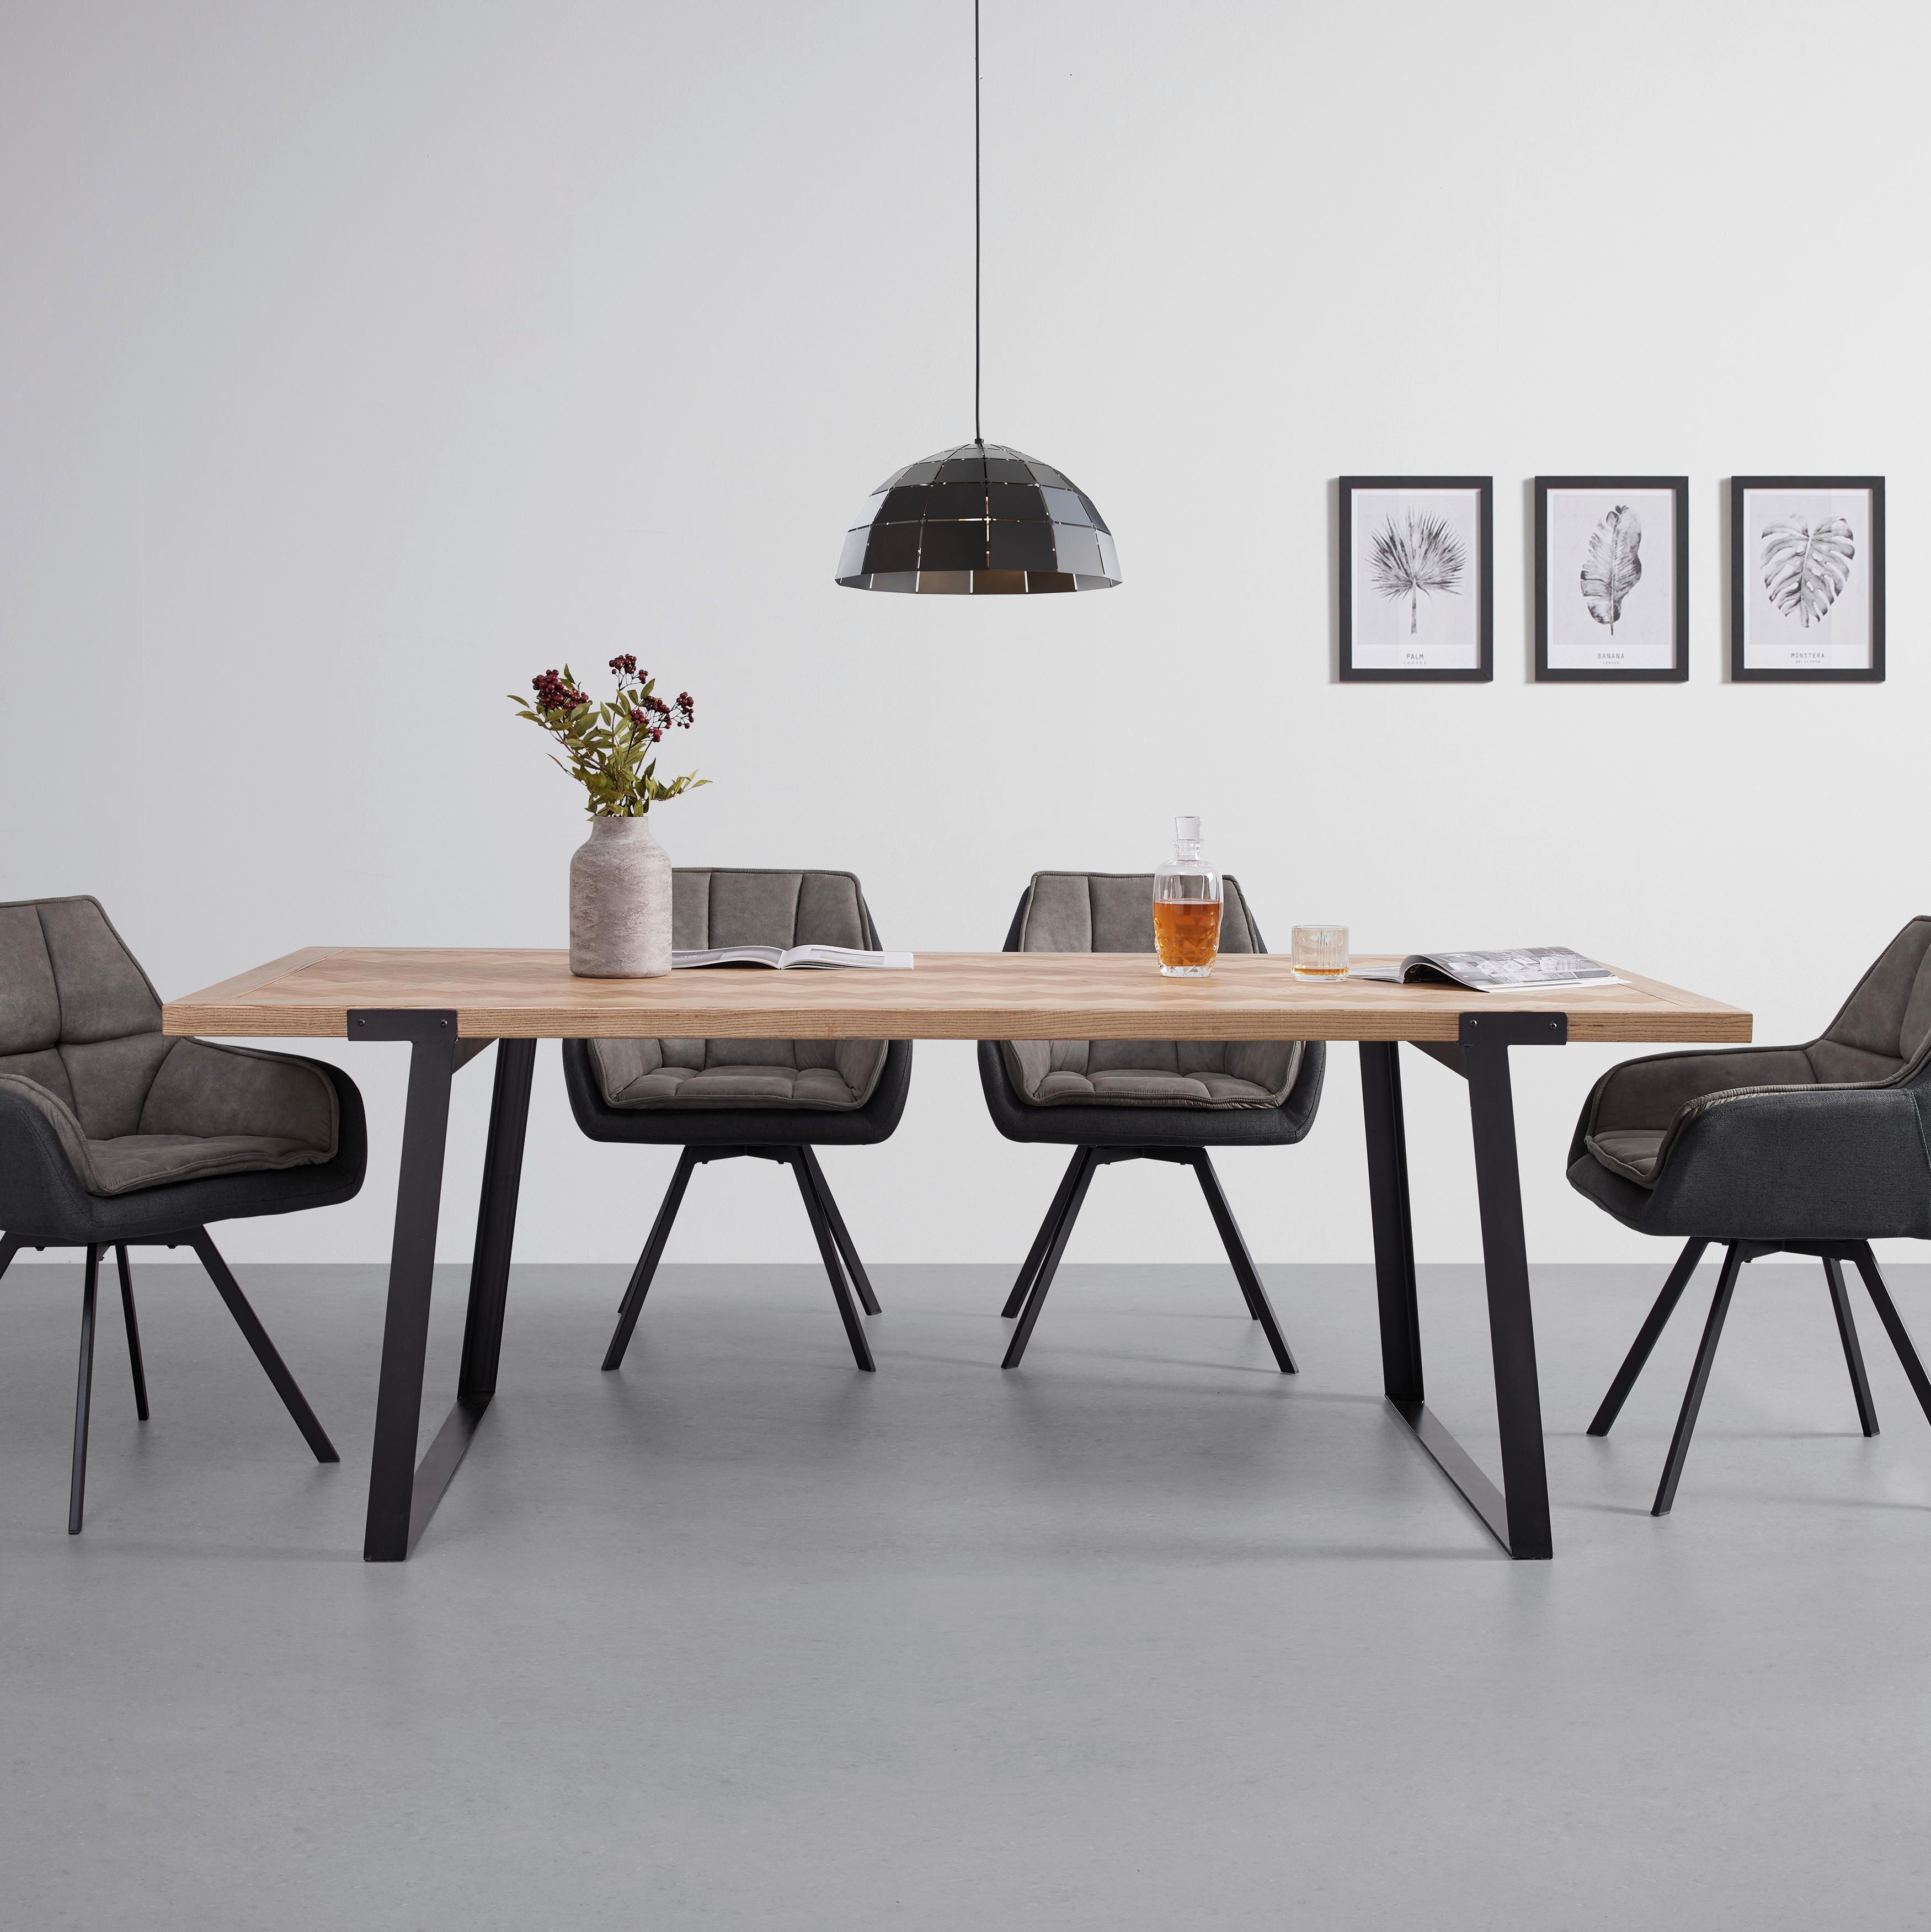 Jídelní Stůl Milano Jasan 220x100 Cm - černá/barvy jasanu, Moderní, kov/dřevo (220/100/78cm) - Bessagi Home